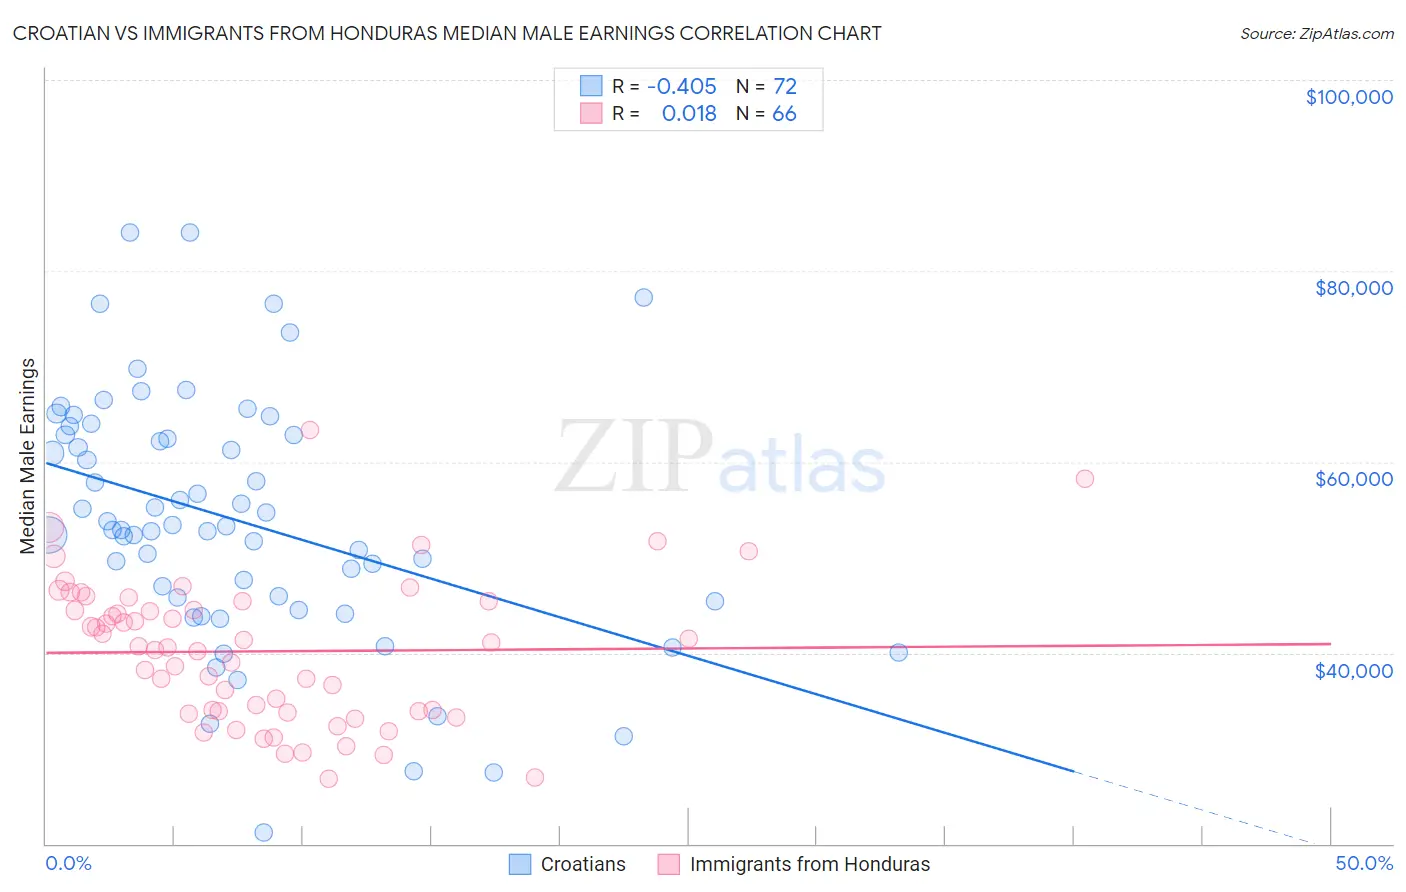 Croatian vs Immigrants from Honduras Median Male Earnings